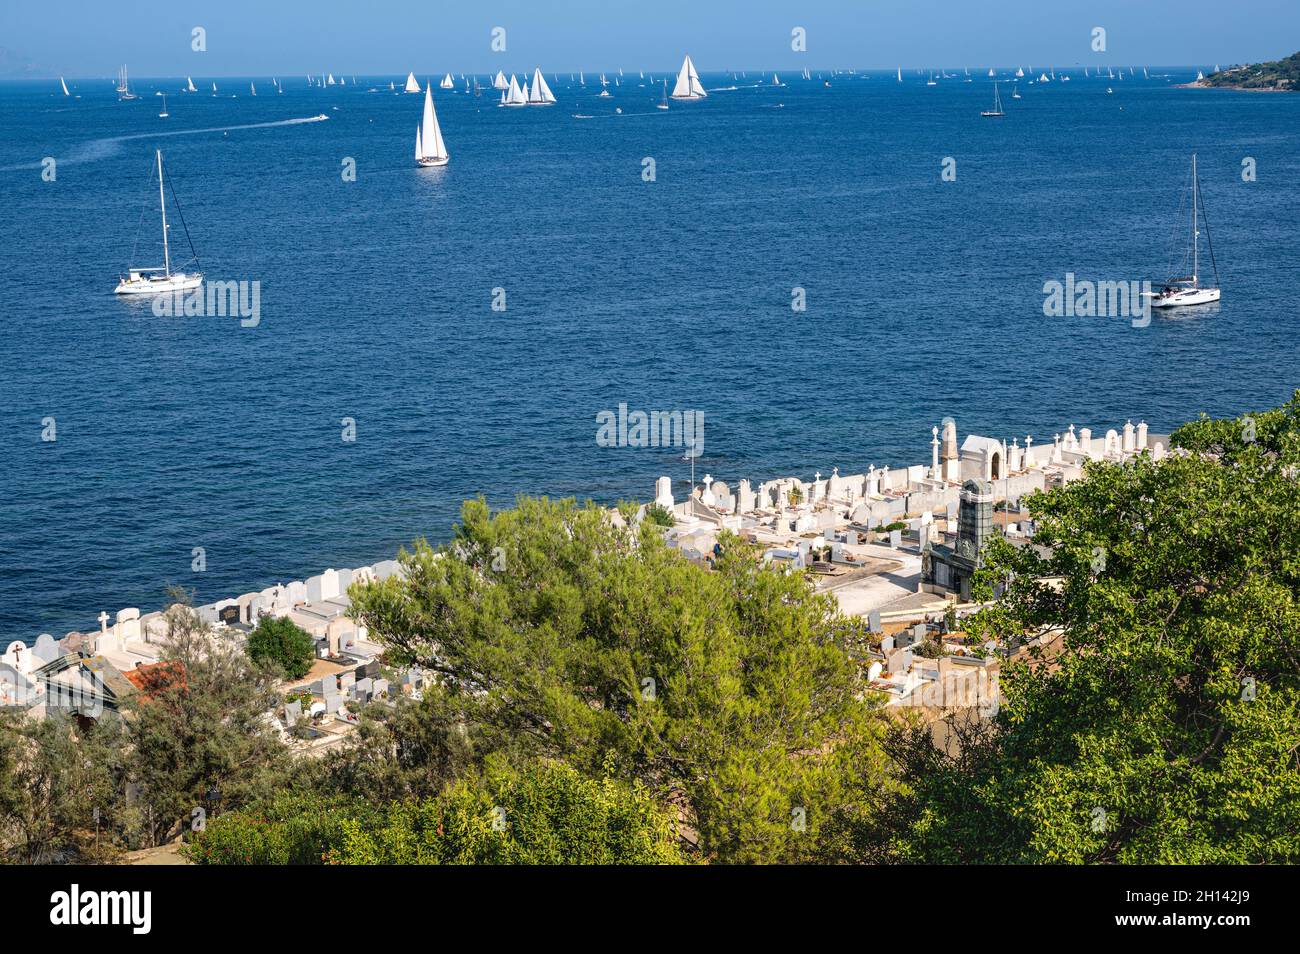 Der Seemannsfriedhof von Saint-Tropez an der Côte d'Azur, Frankreich Stockfoto